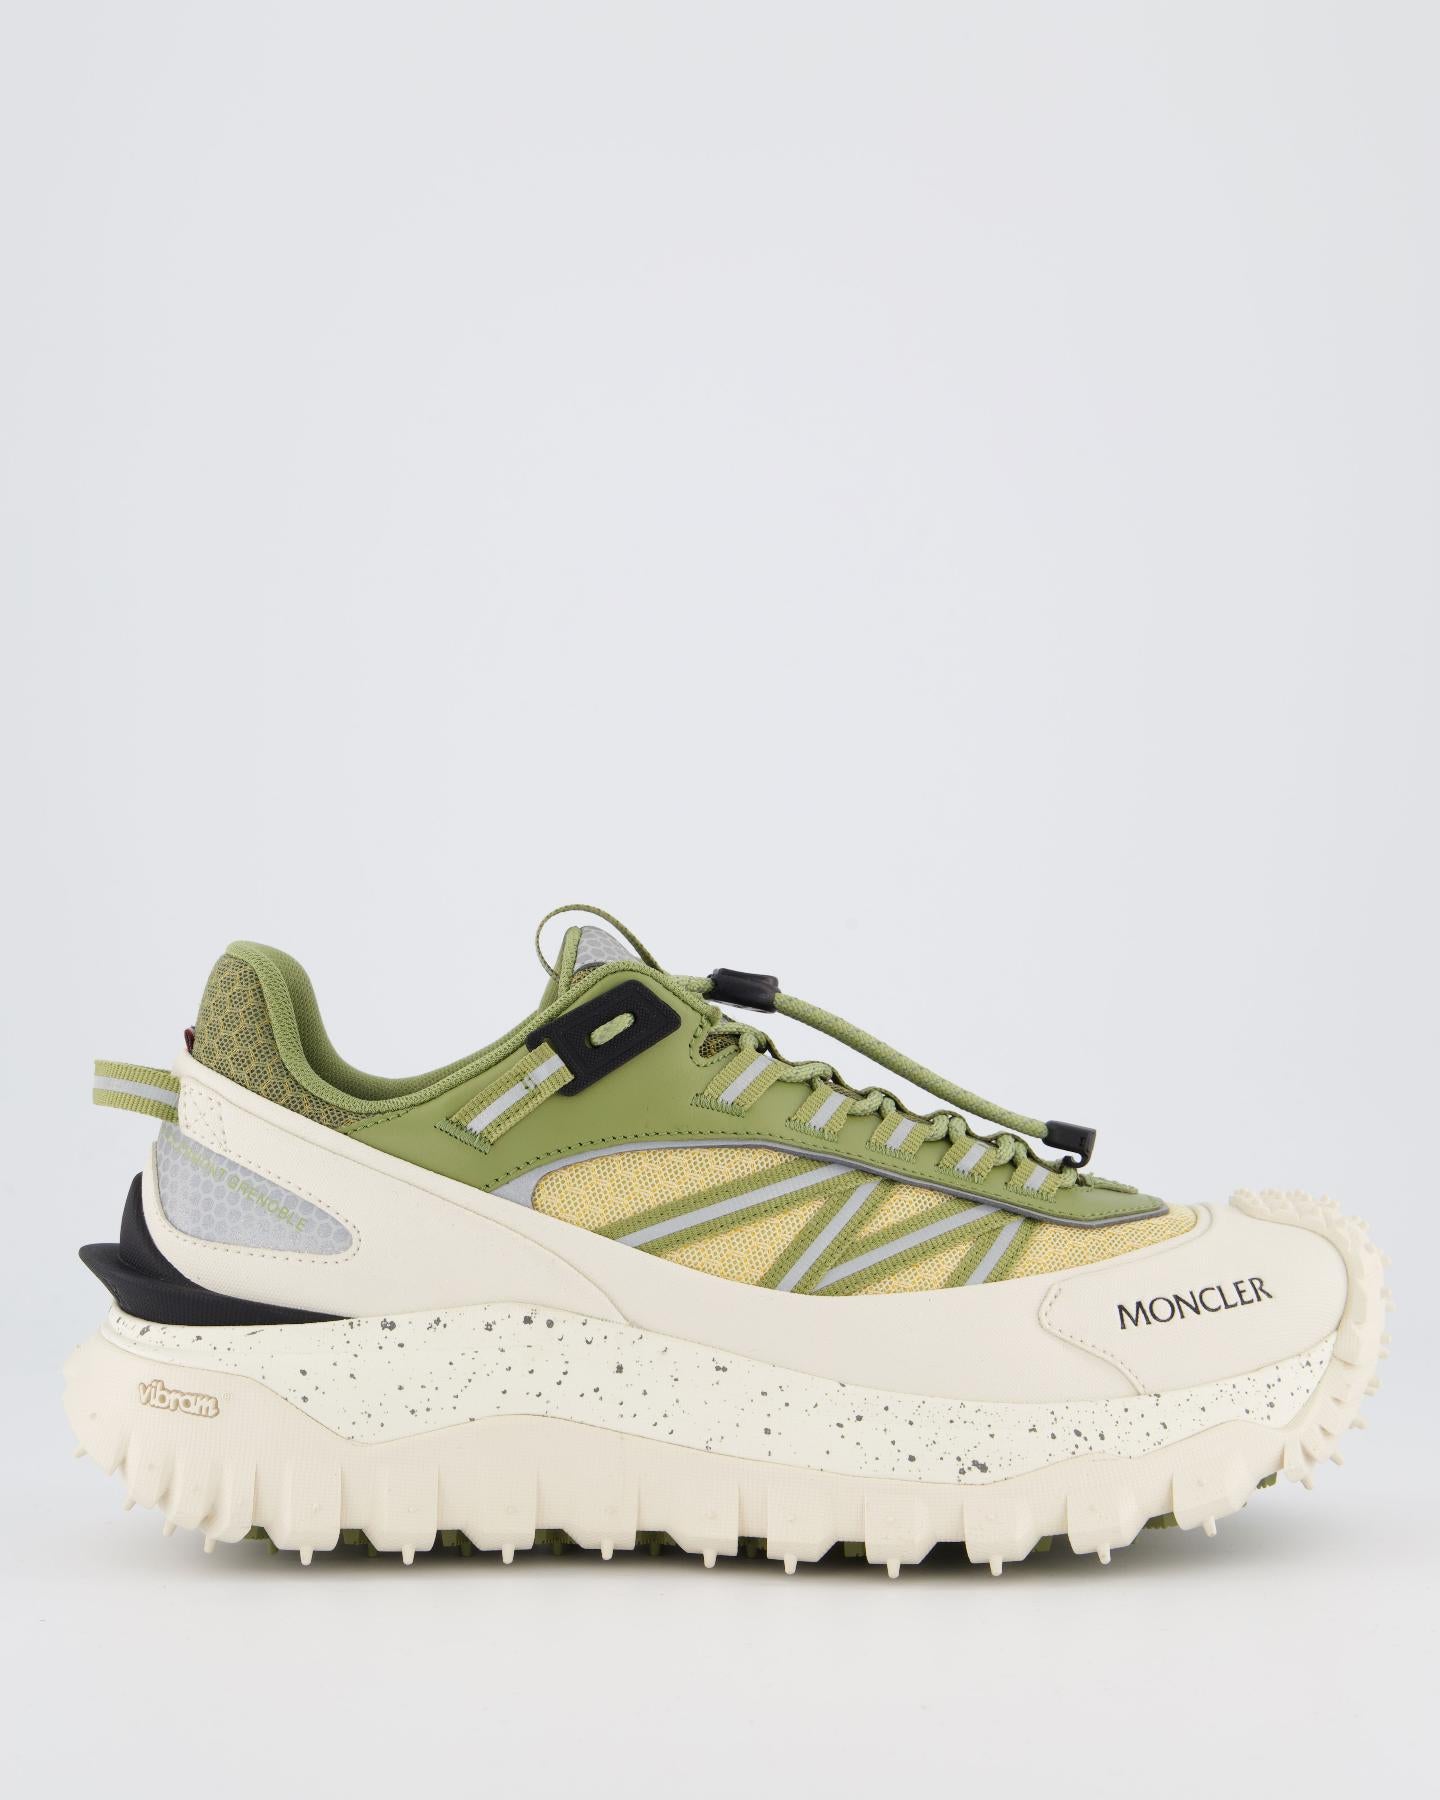 Heren Trailgrip Sneakers Wit/Groen